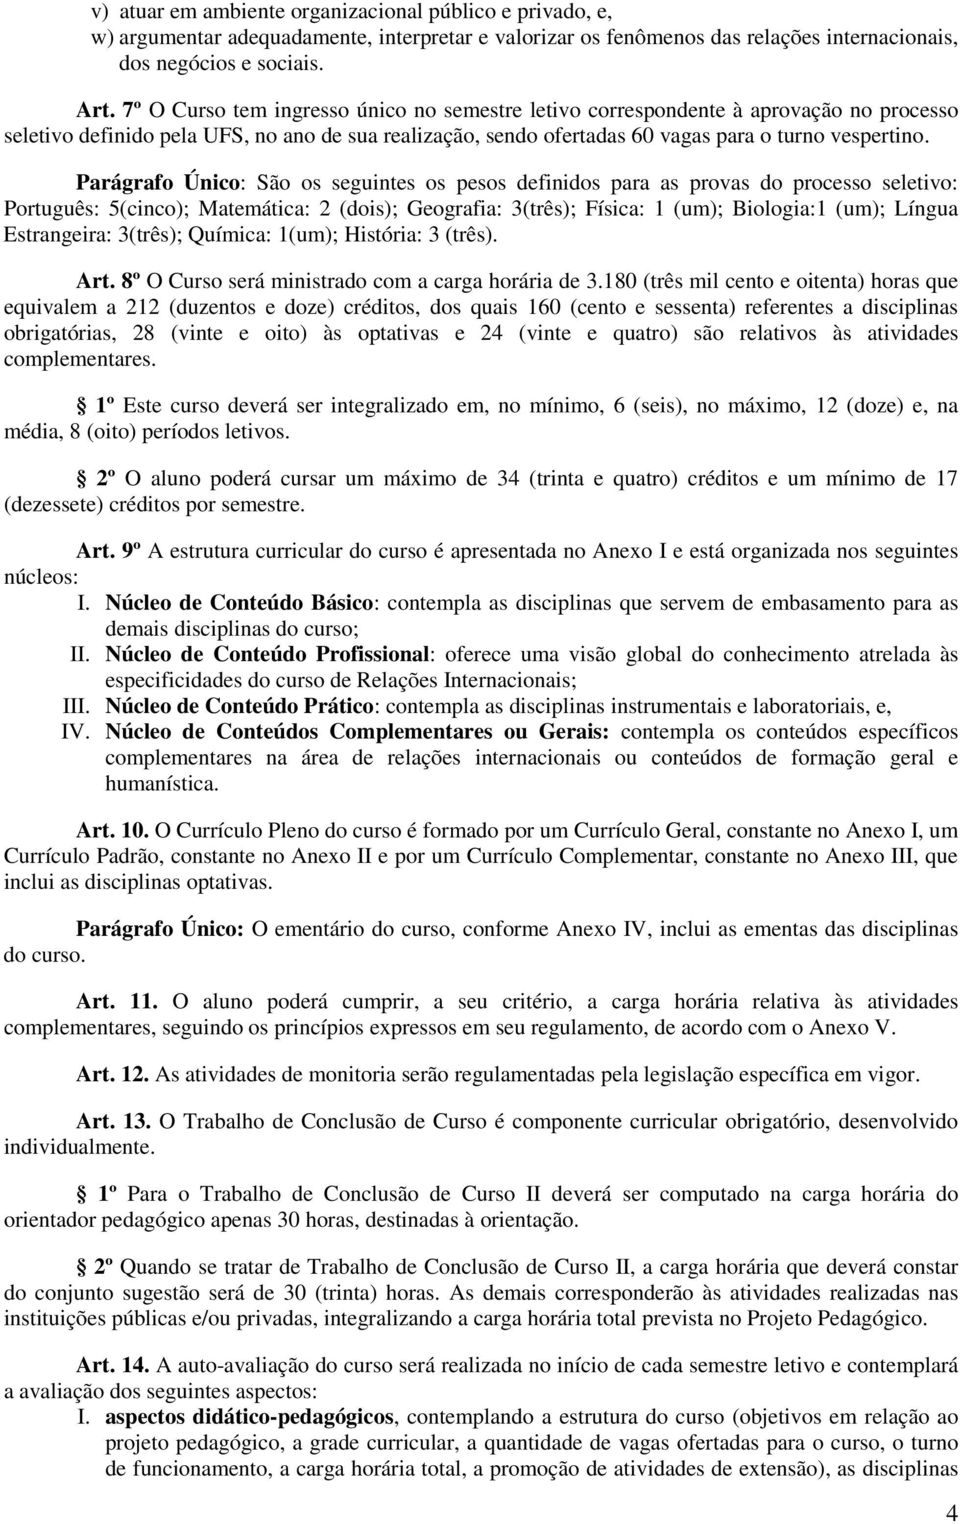 Parágrafo Único: São os seguintes os pesos definidos para as provas do processo seletivo: Português: 5(cinco); Matemática: 2 (dois); Geografia: 3(três); Física: 1 (um); Biologia:1 (um); Língua